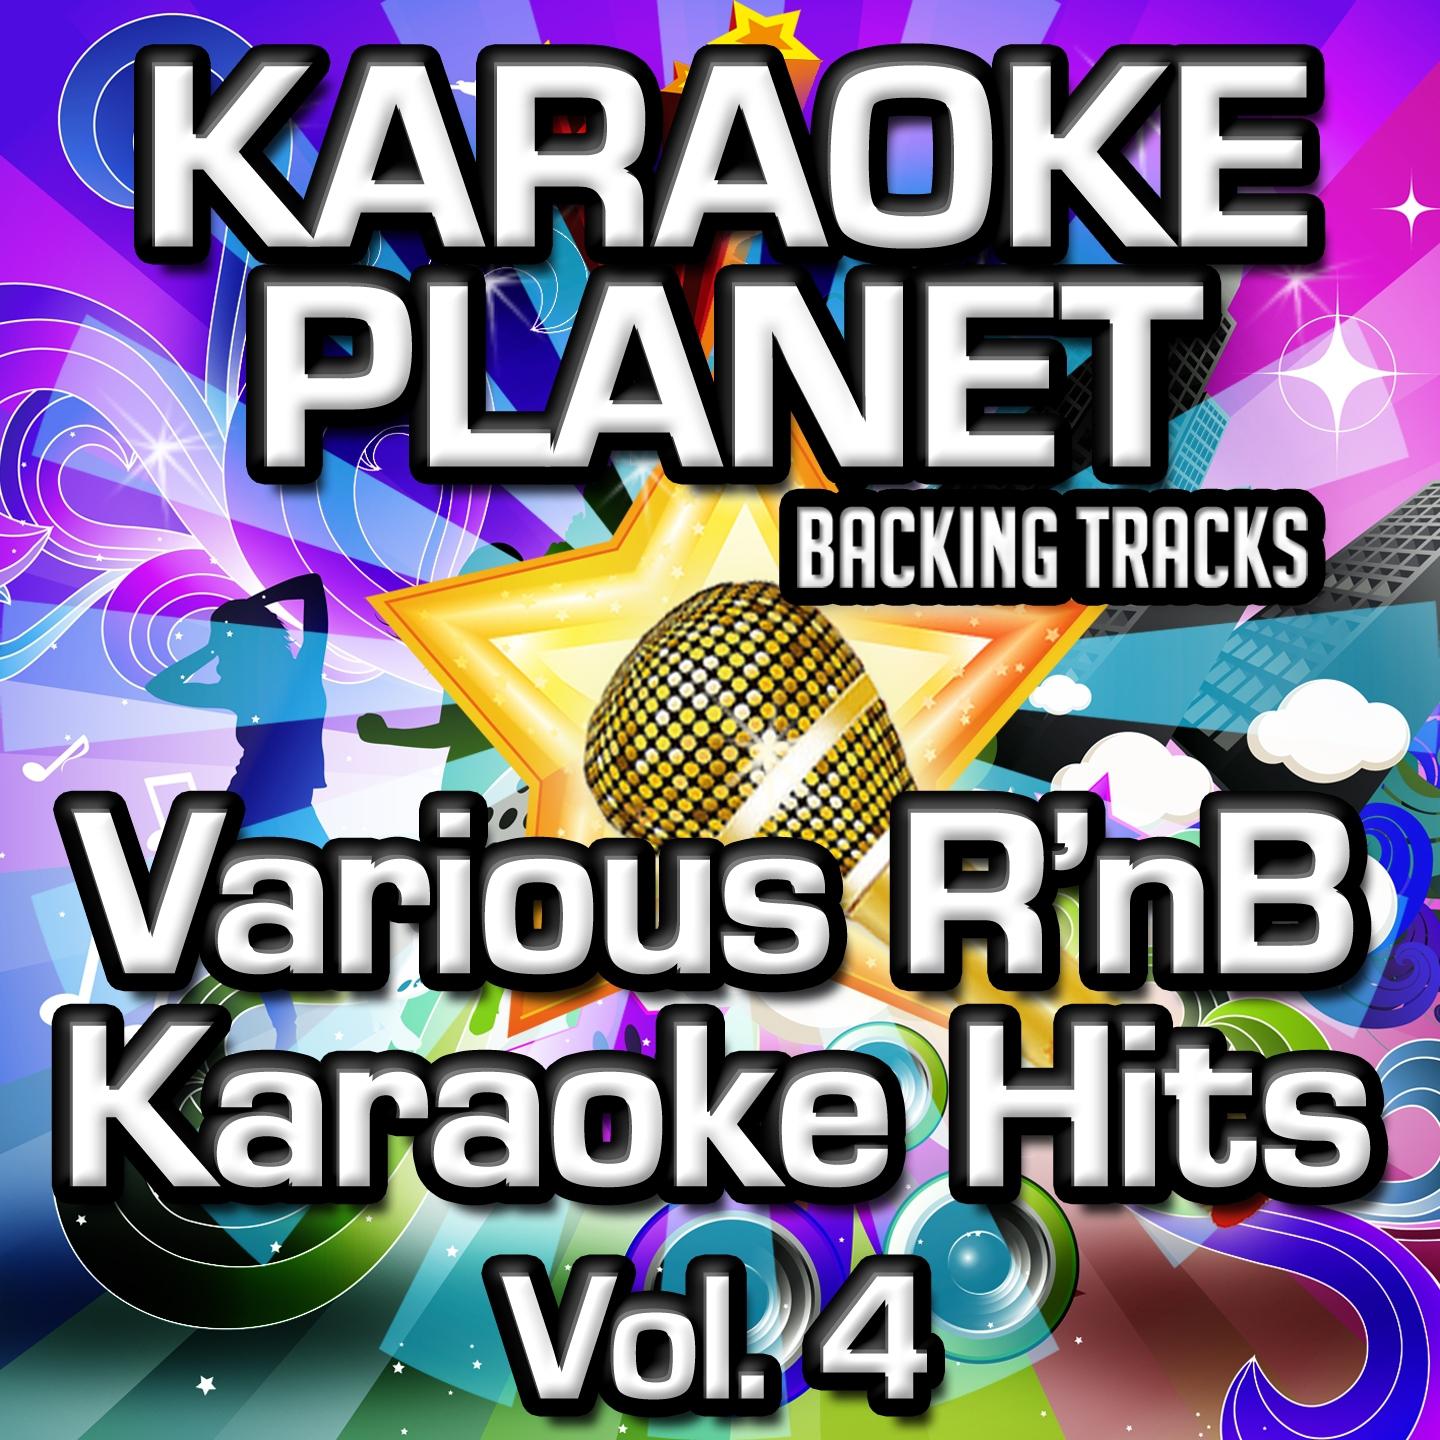 Various R'nb Karaoke Hits, Vol. 4